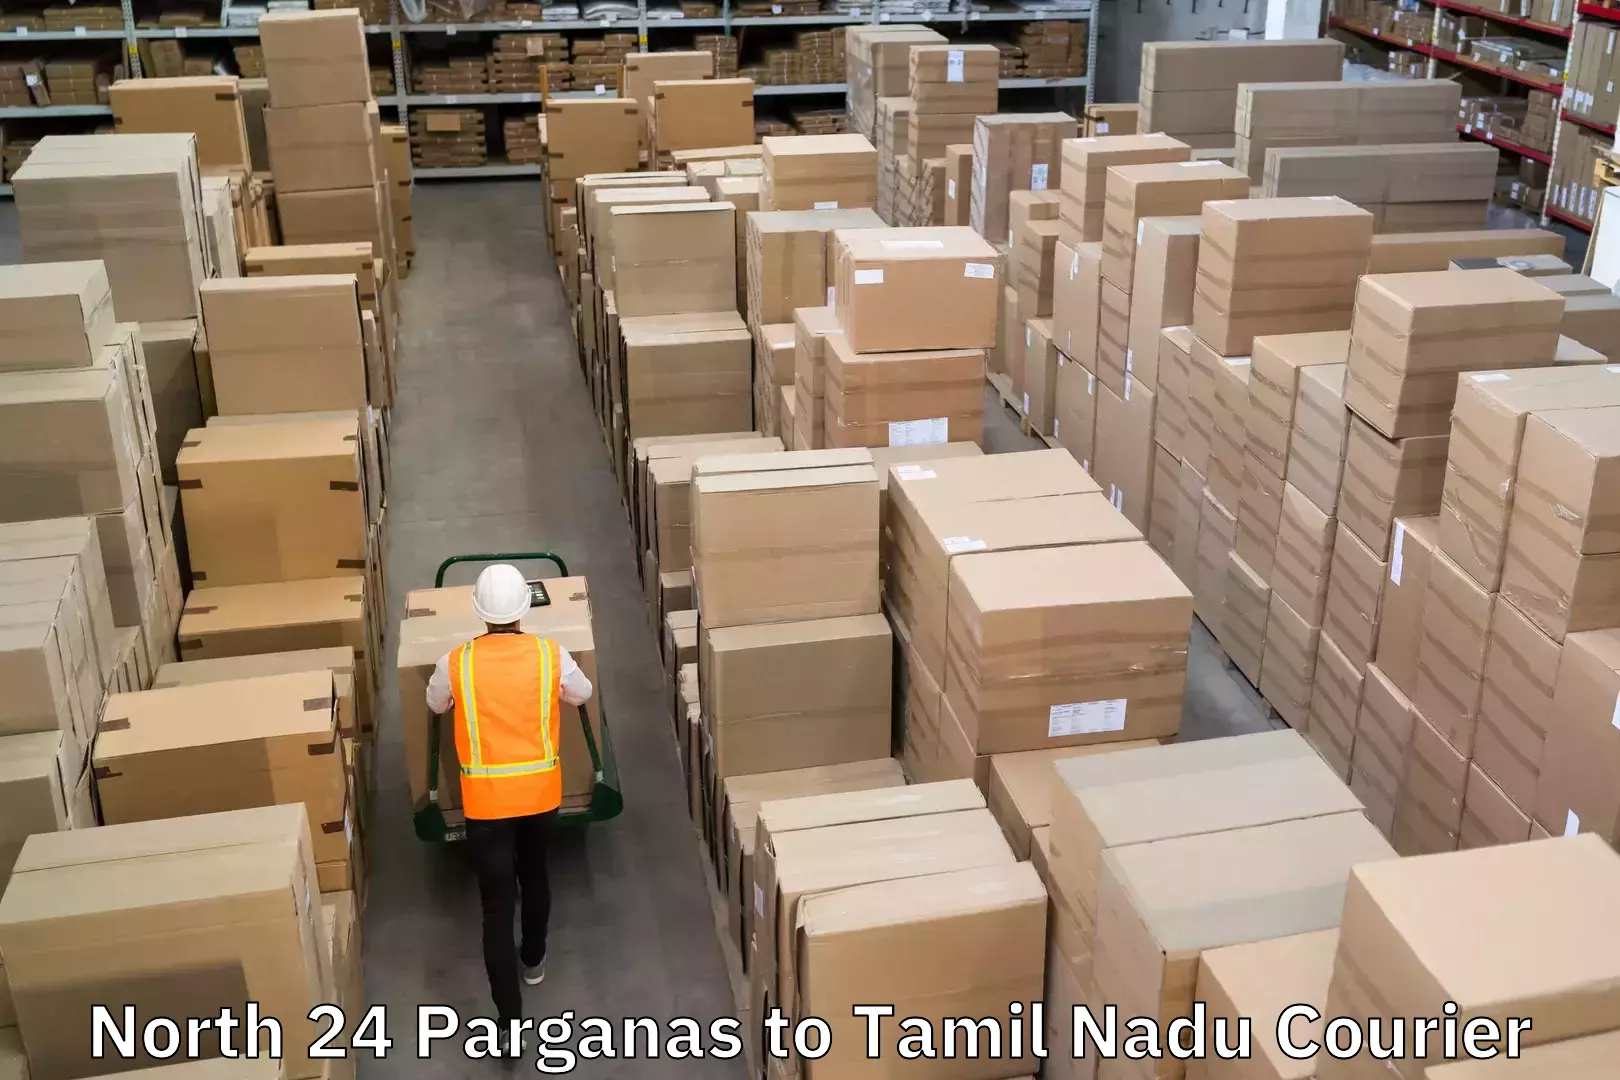 High-performance logistics North 24 Parganas to Tamil Nadu